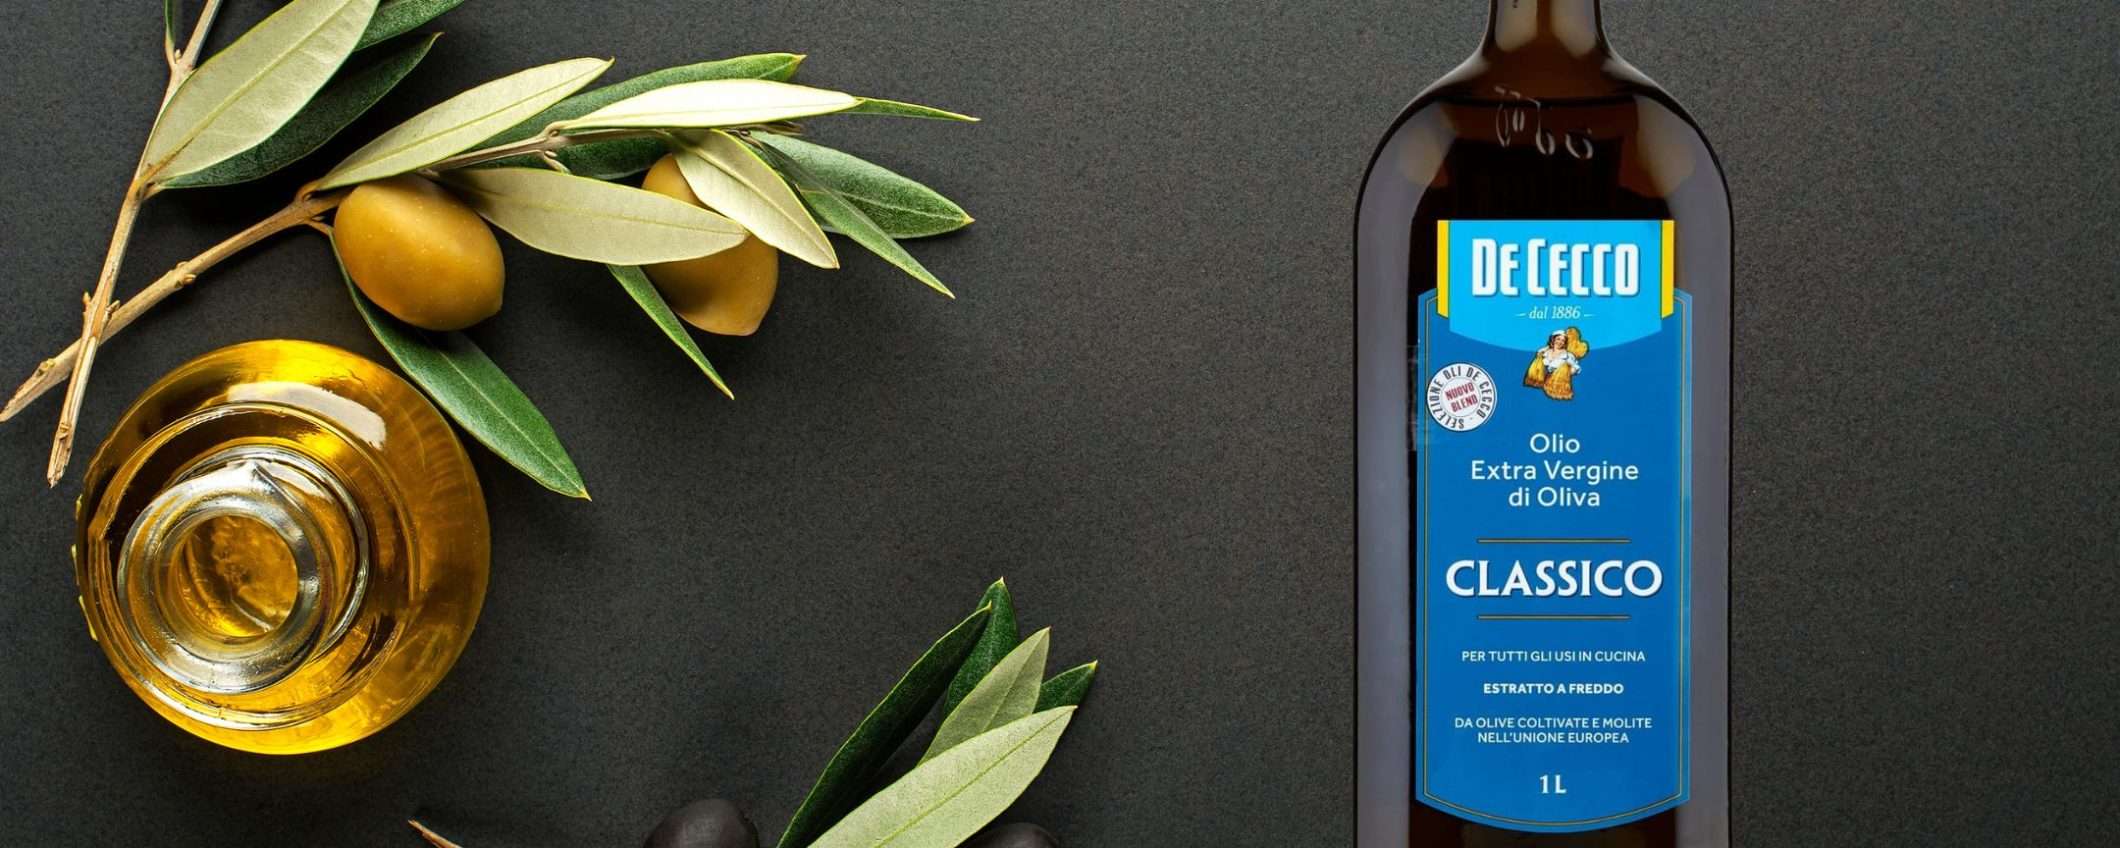 De Cecco: olio extra vergine d'oliva 1 litro a 9,49€ su Amazon, OFFERTA WOW